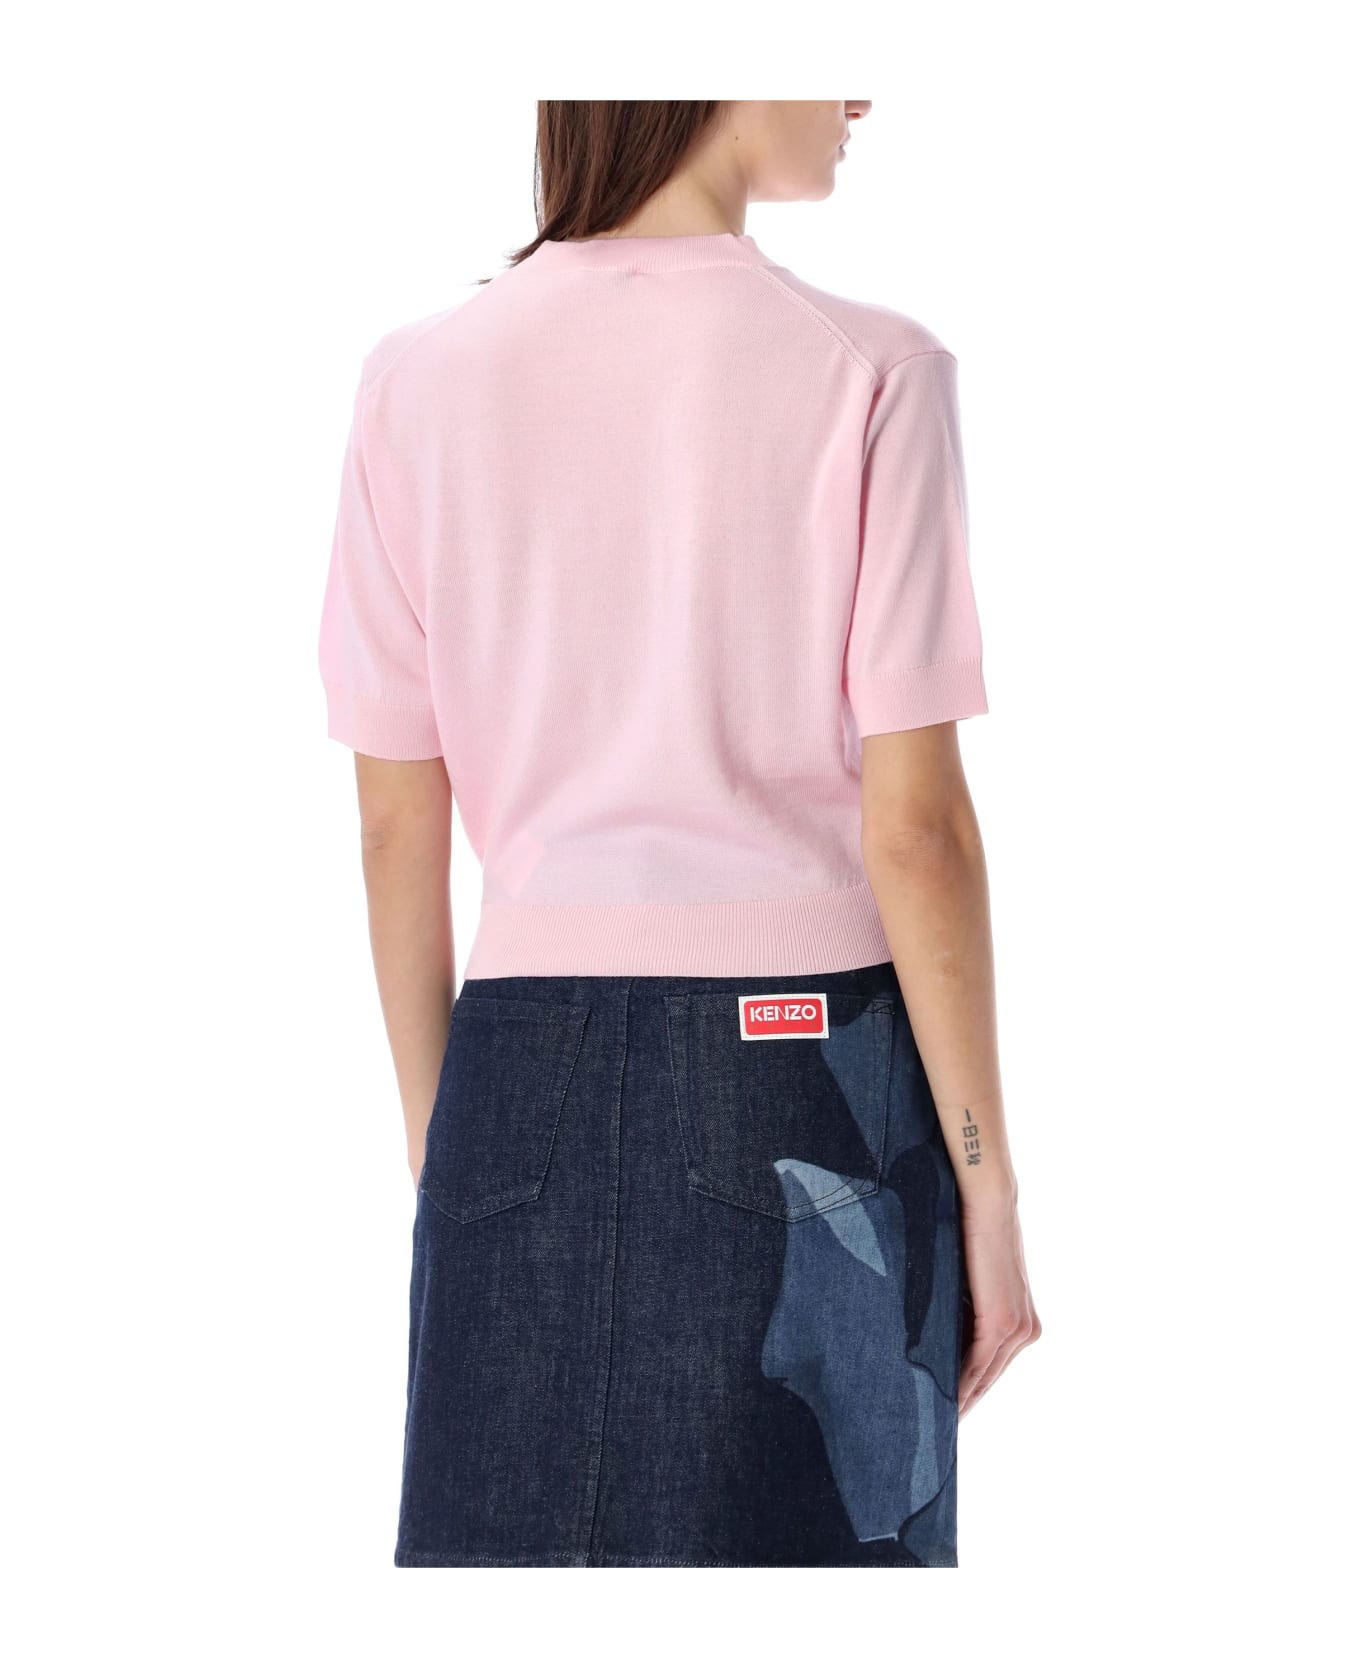 Kenzo Boke Crest Short Sleeve Jumper - FADED PINK Tシャツ